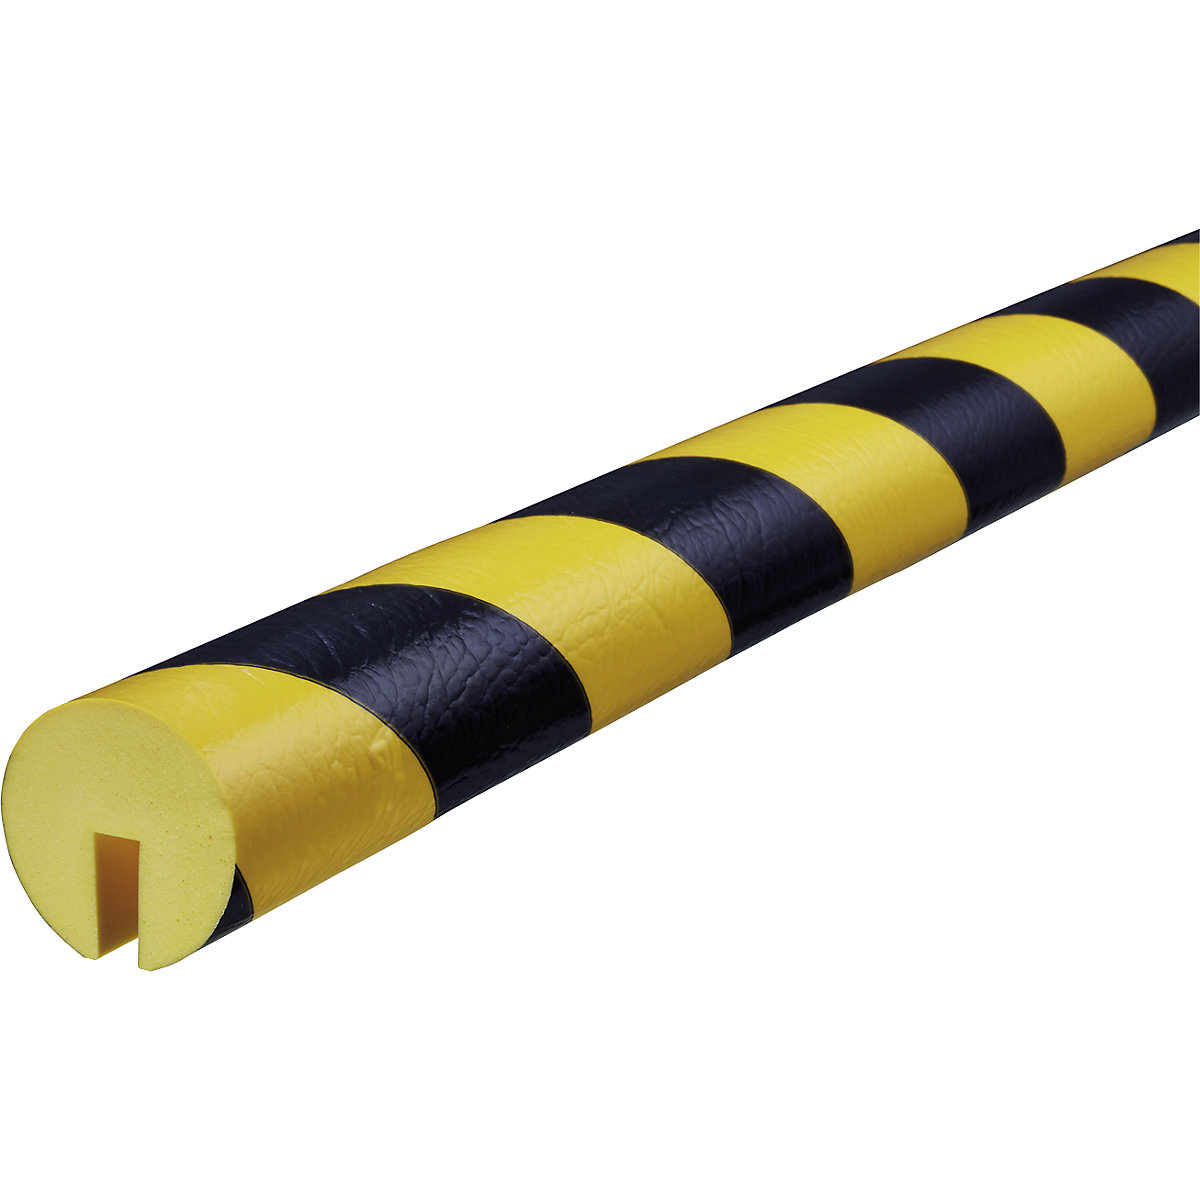 Knuffi®-randbescherming – SHG, type B, stuk van 1 m, zwart/geel-17